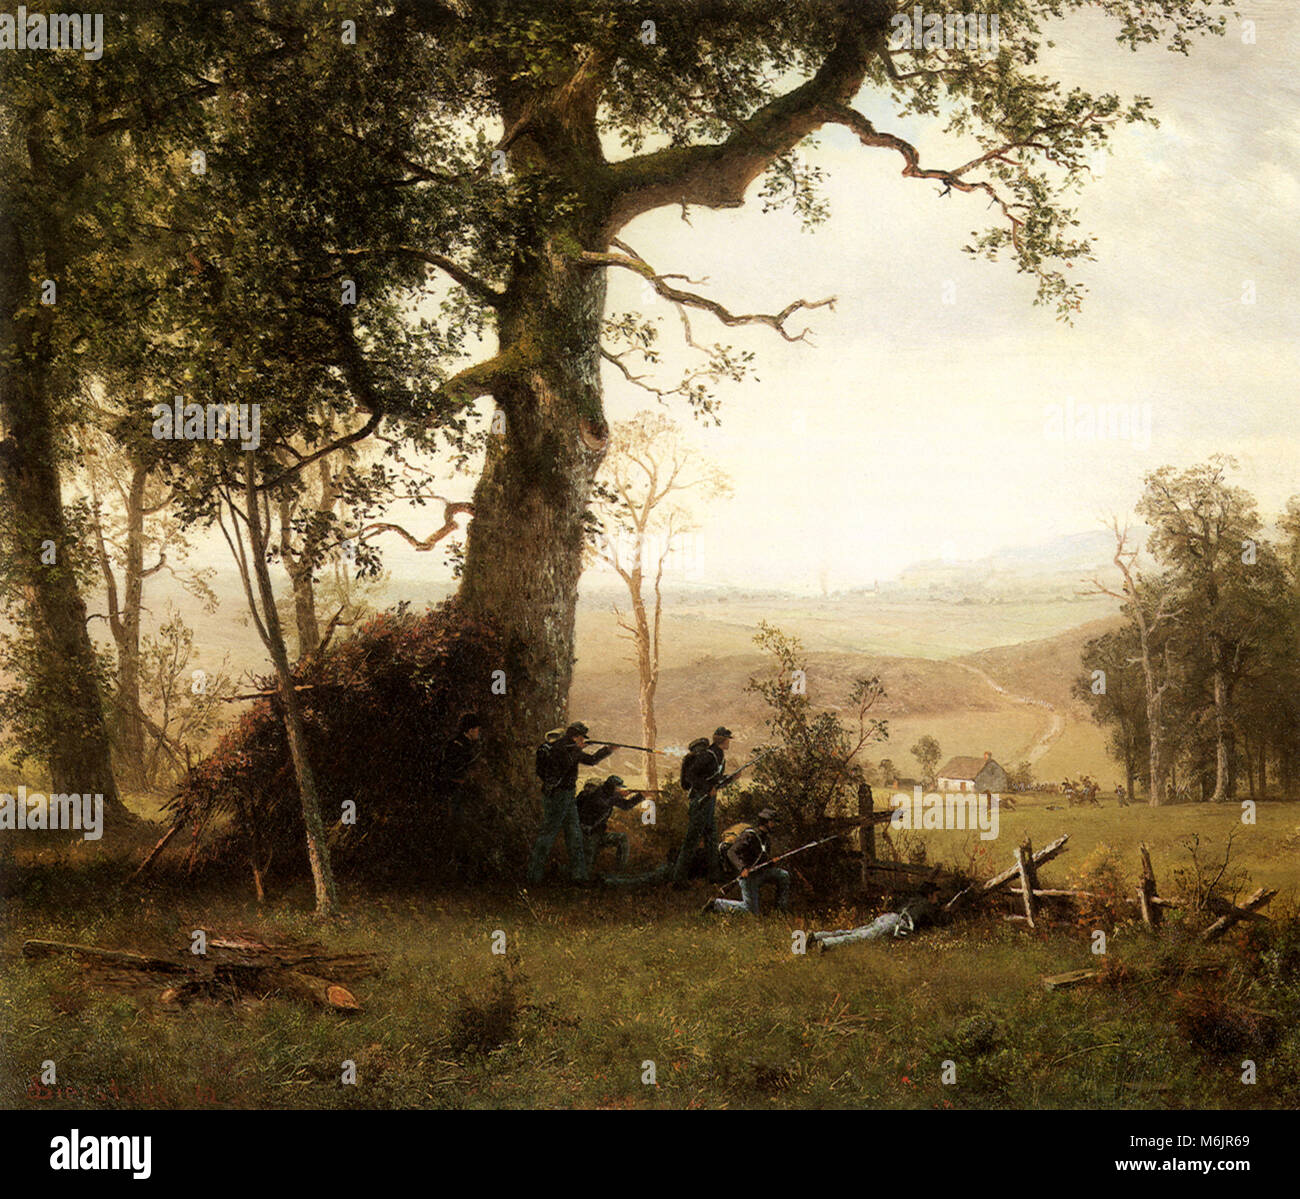 Guerrilla Warfare, Bierstadt, Albert, 1862. Stock Photo